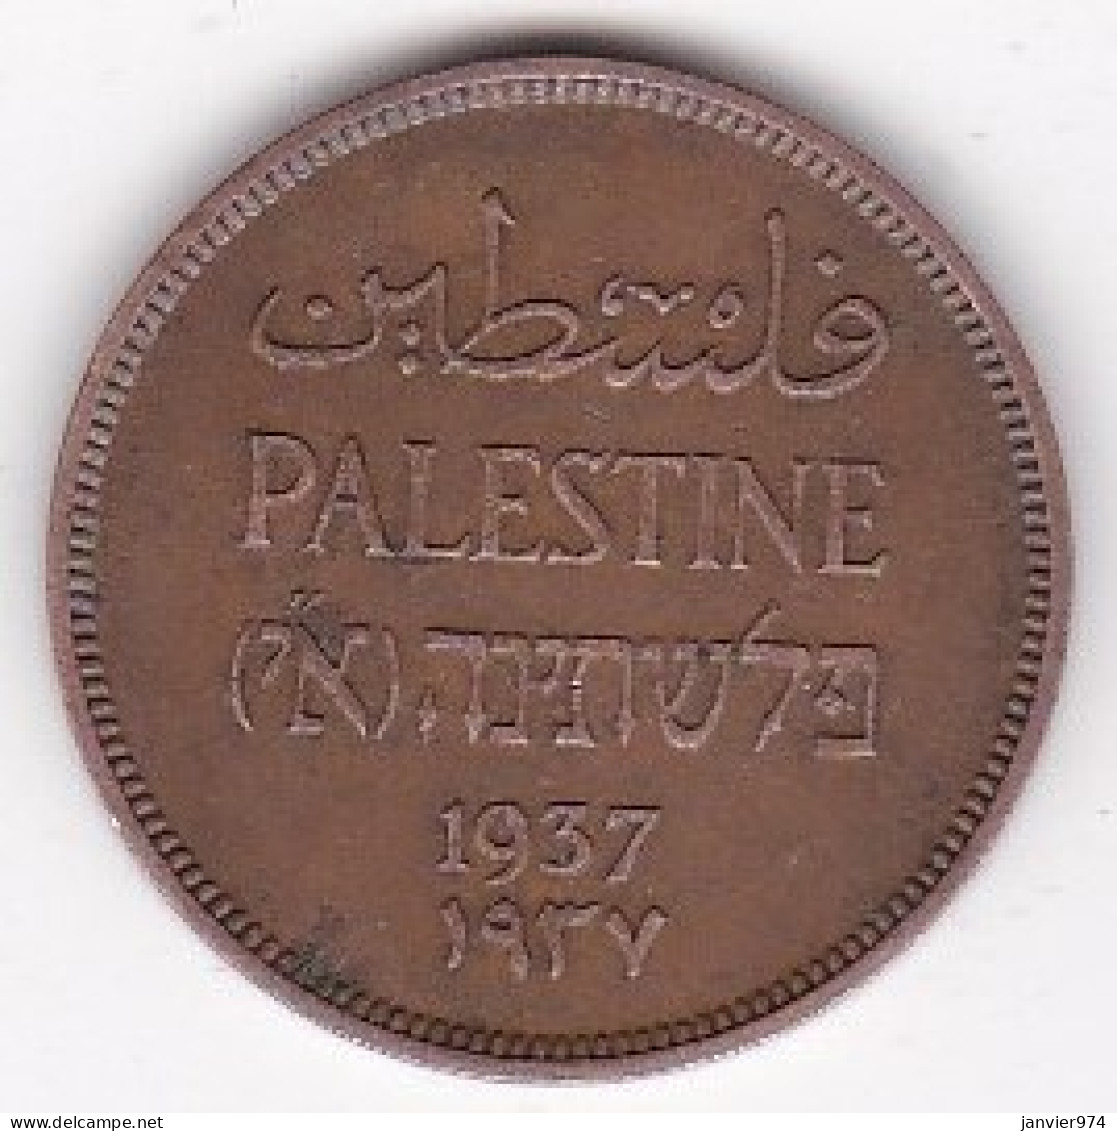 Palestine Sous Mandat Britannique, 1 Mil 1937 , En Bronze , KM# 1 - Israël